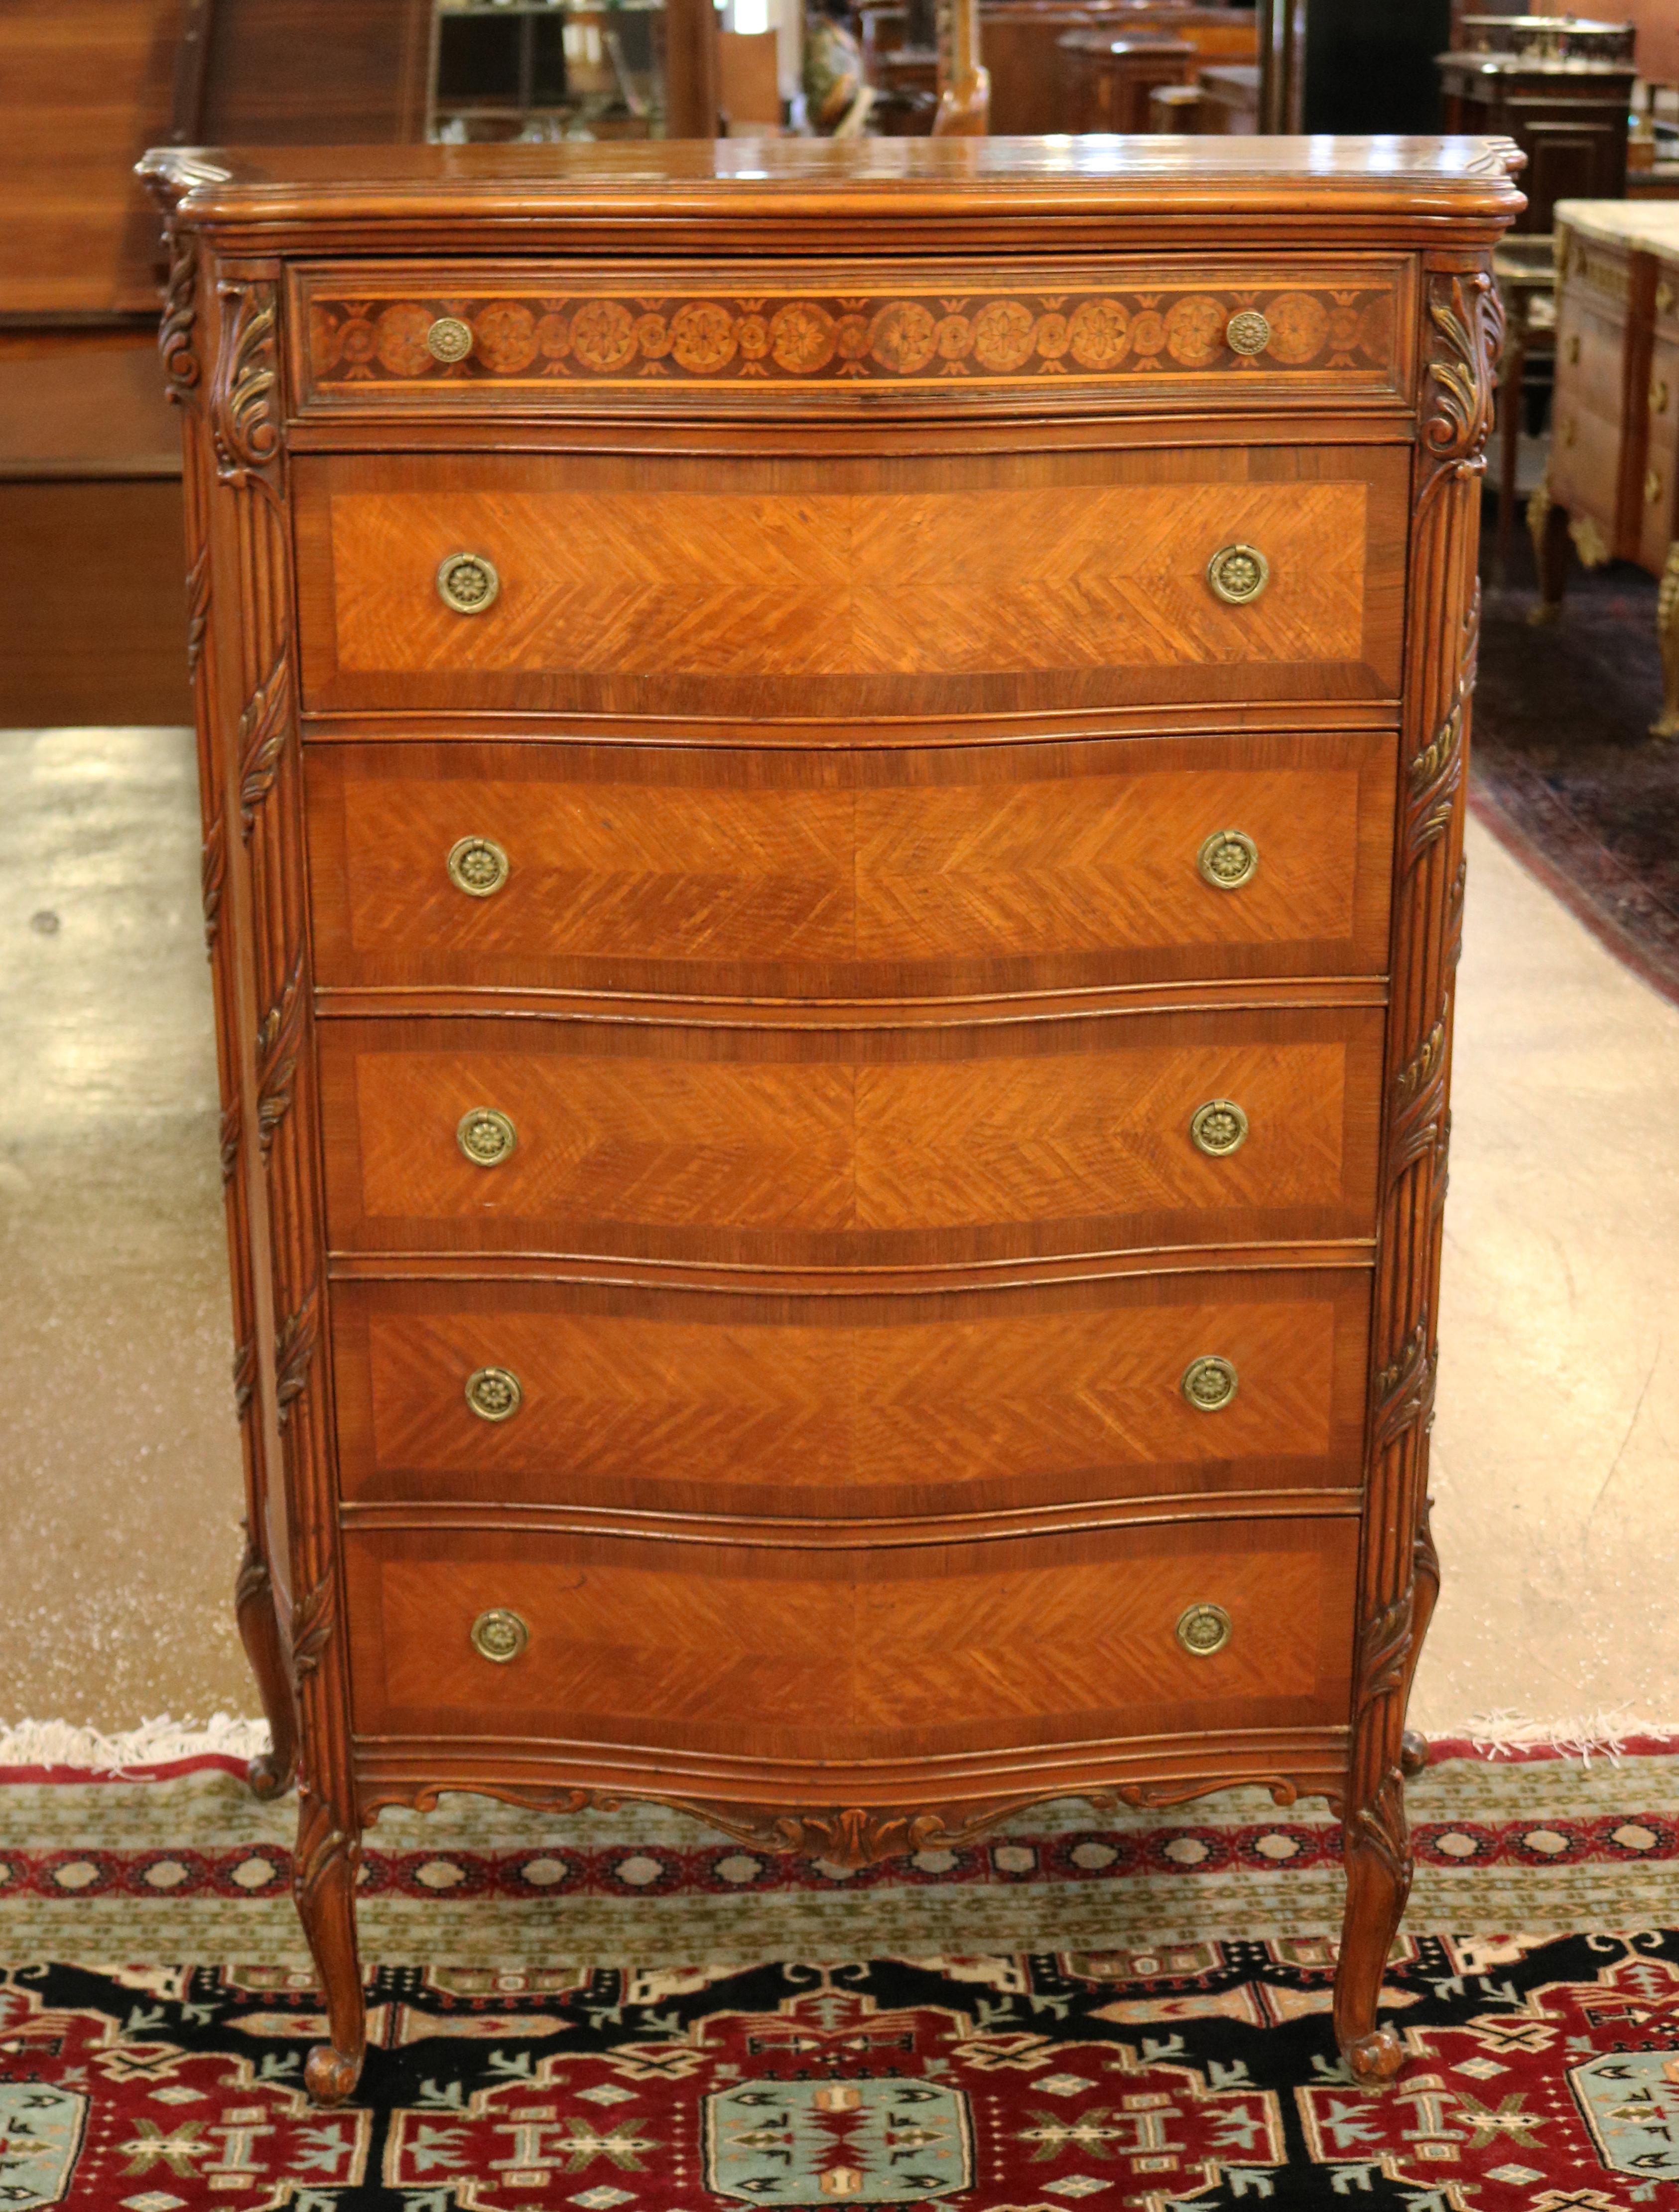 Fabuleuse commode haute en bois de roi marqueté de style Louis XV

Dimensions : 55